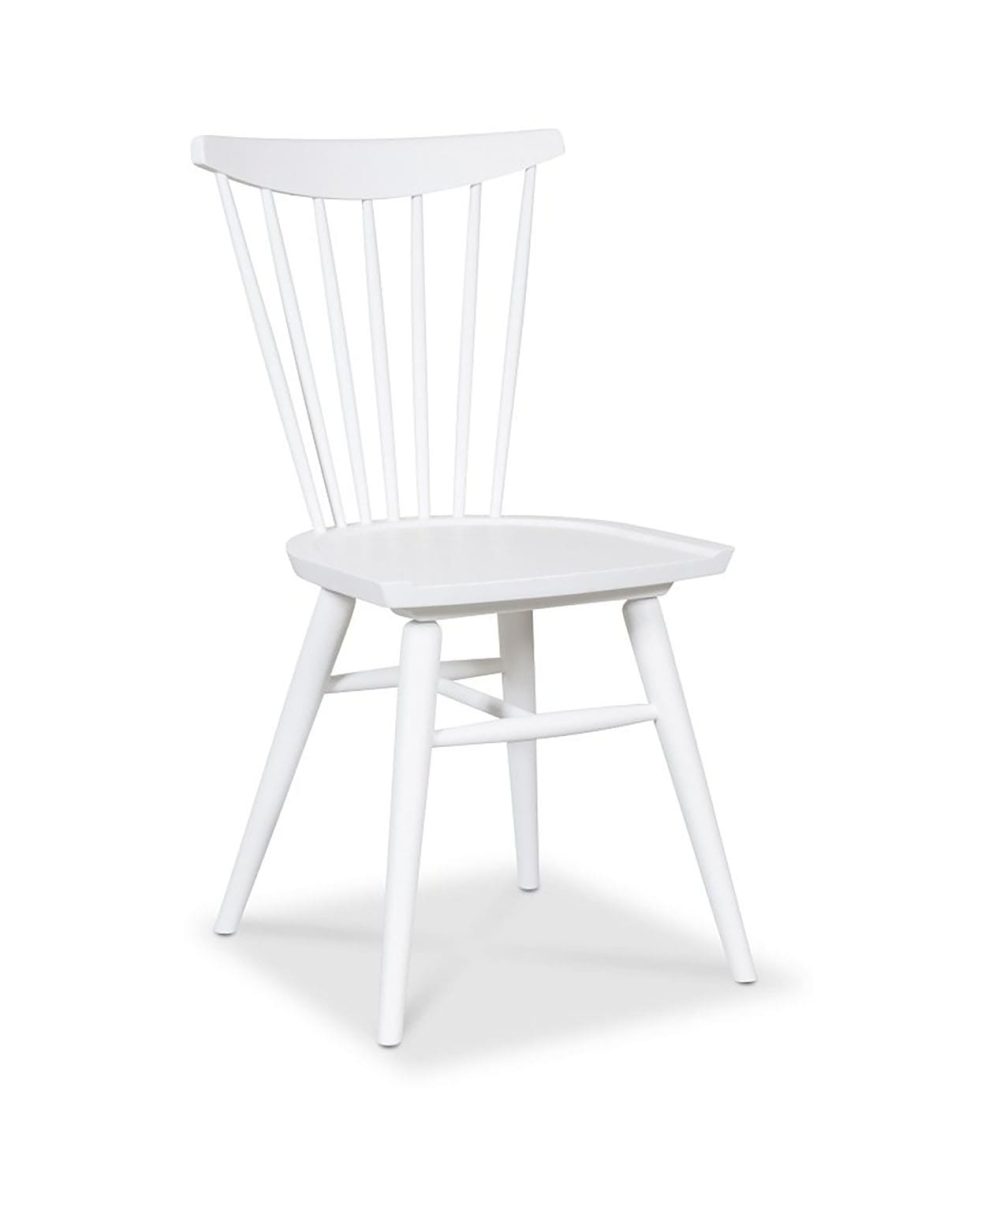 thor-chair-white-profile.jpg